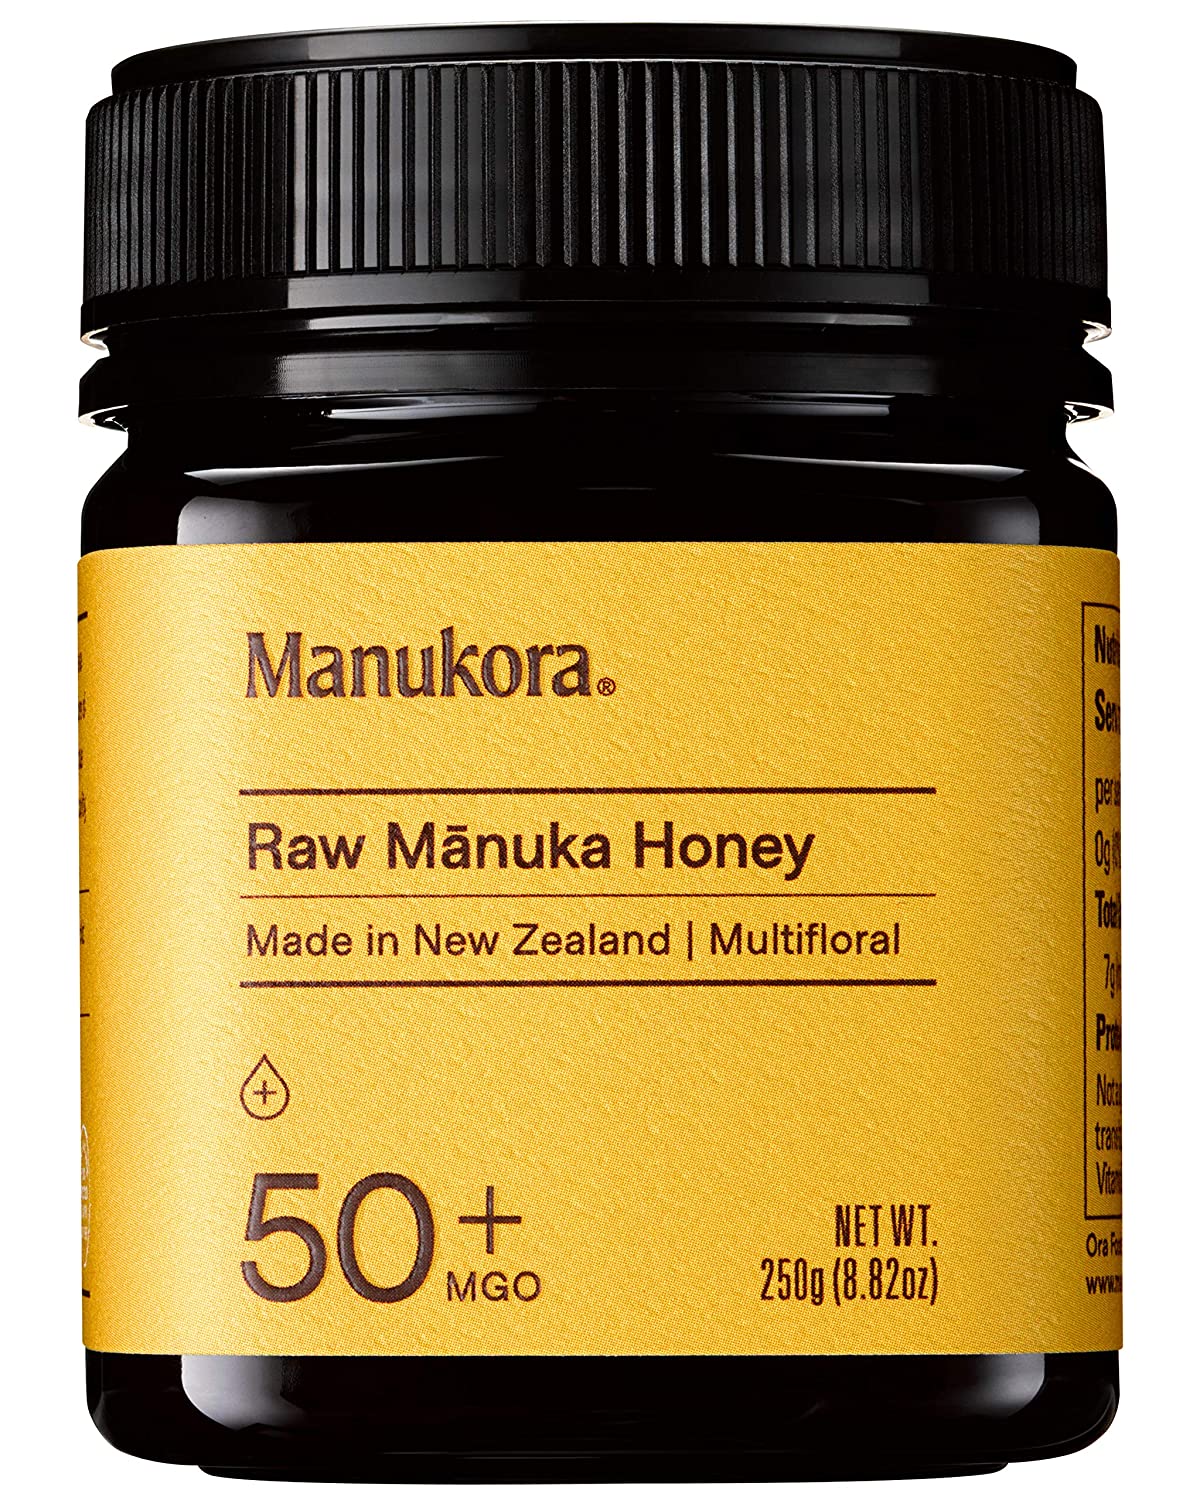 Manukora MGO 50+ Multifloral Raw Manuka Honey - 8.8 oz